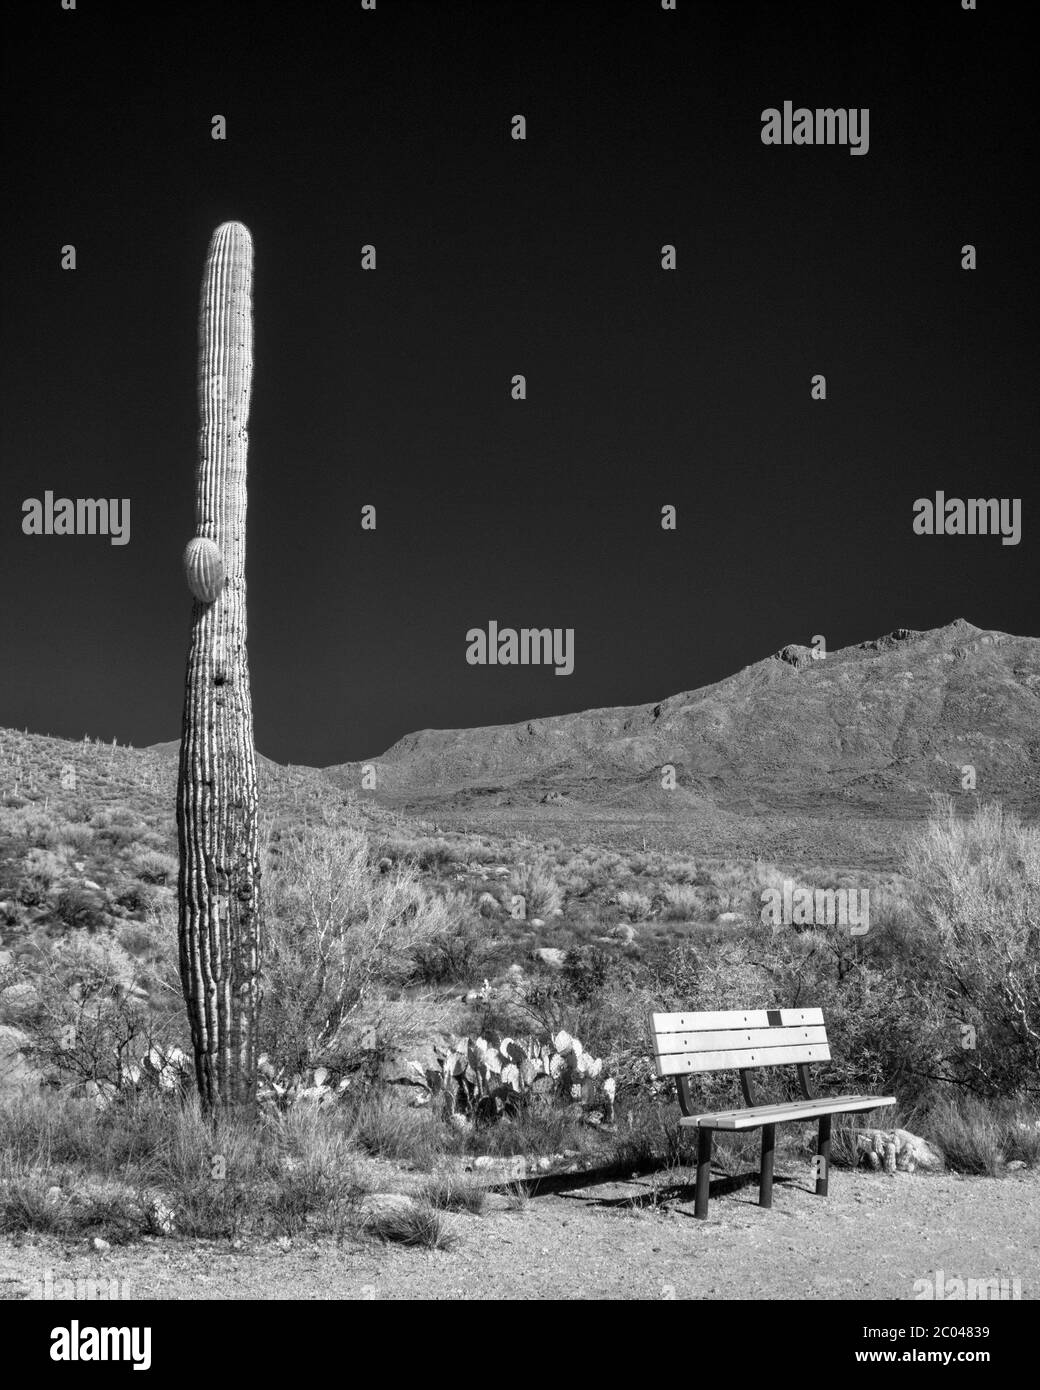 Image infrarouge avec des cactus Saguaro / Cacti et montagnes dans le comté de Pinal dans le sud de l'Arizona dans le désert de la végétation de la région de Tucson en hiver Banque D'Images